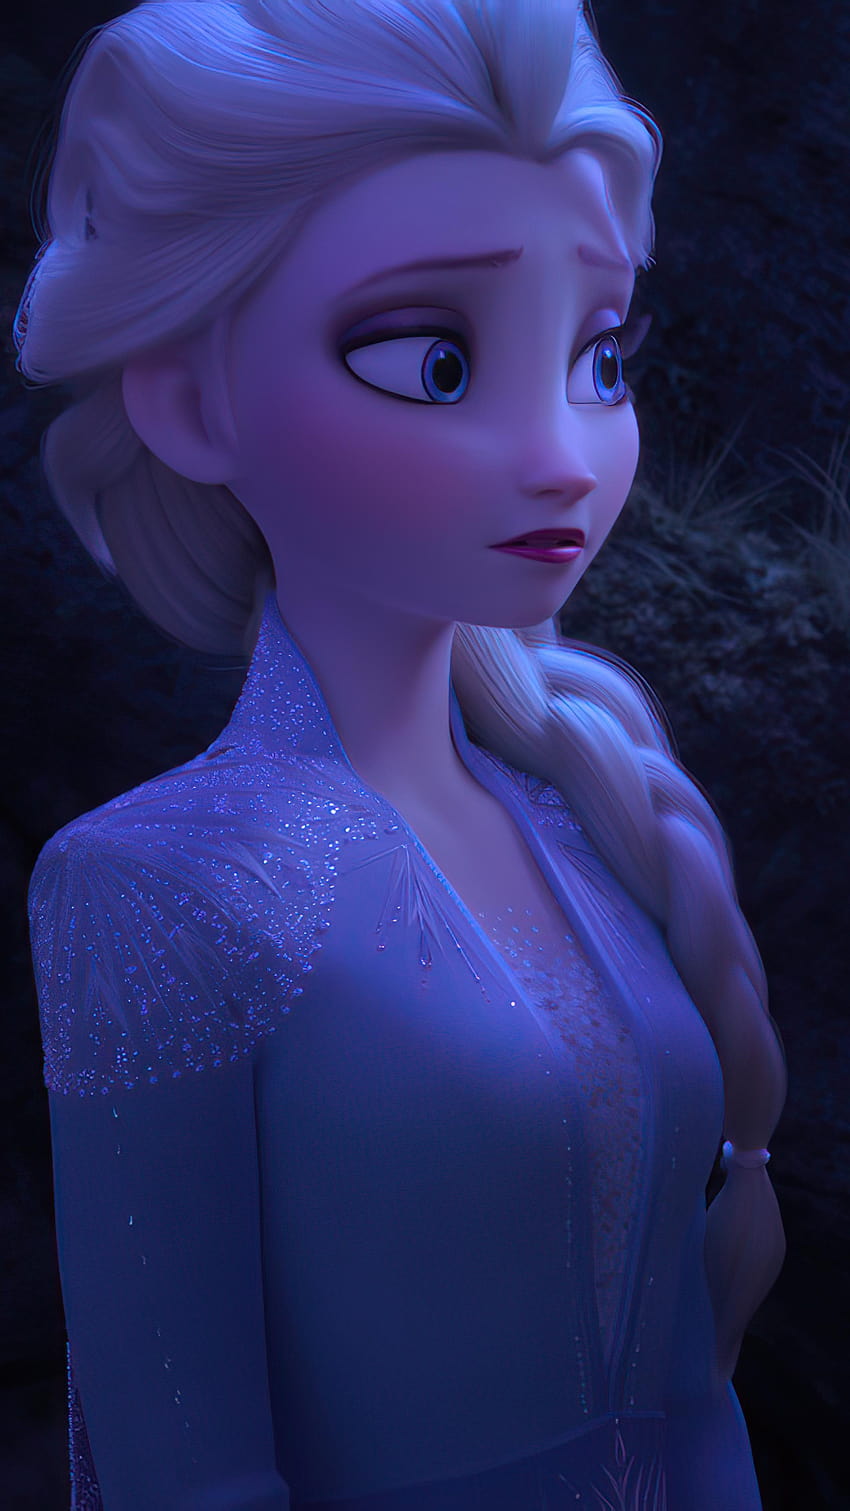 ❄ La carita linda de Elsa ❄, frozen 2 elsa mobile fondo de pantalla del teléfono